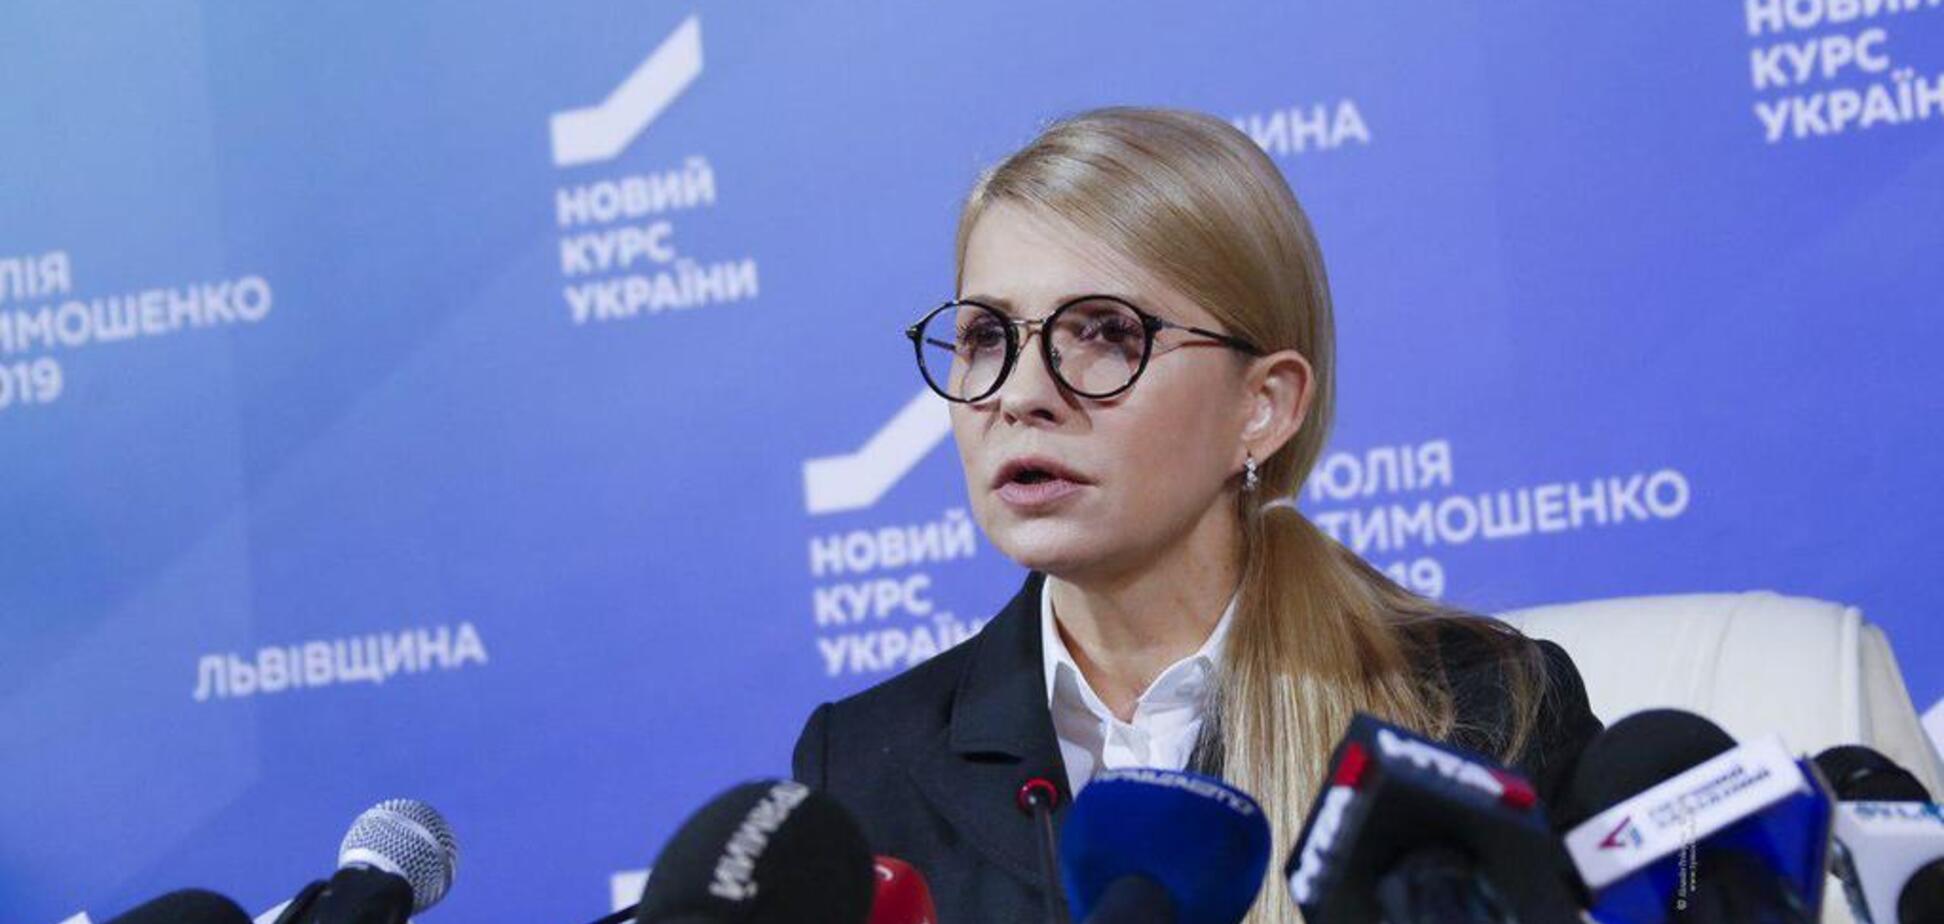 Тимошенко: обов’язкове медстрахування забезпечить людям якісне лікування, а лікарям — гідні зарплати